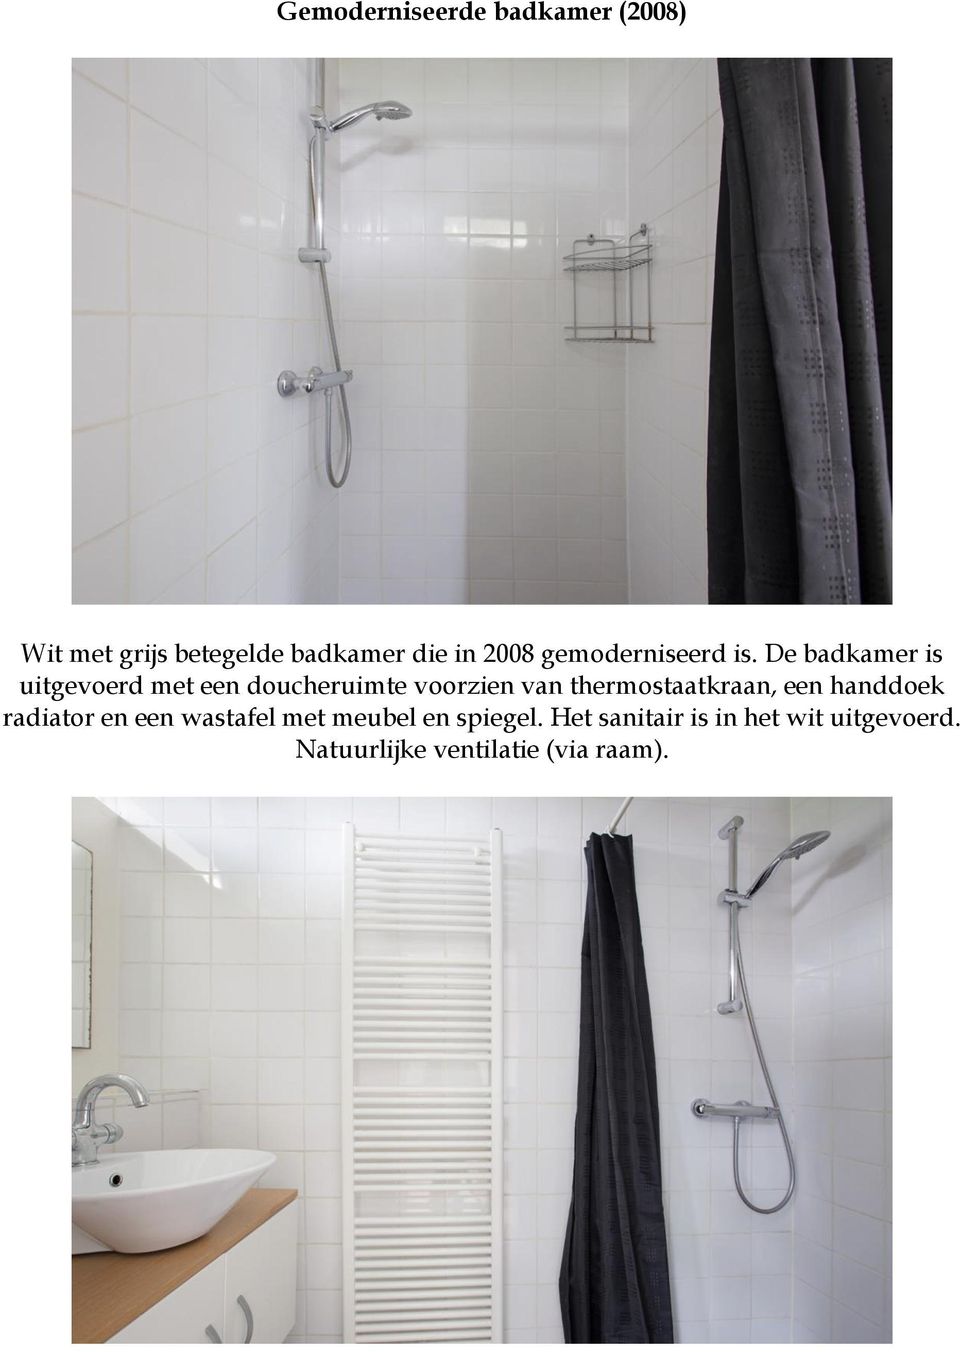 De badkamer is uitgevoerd met een doucheruimte voorzien van